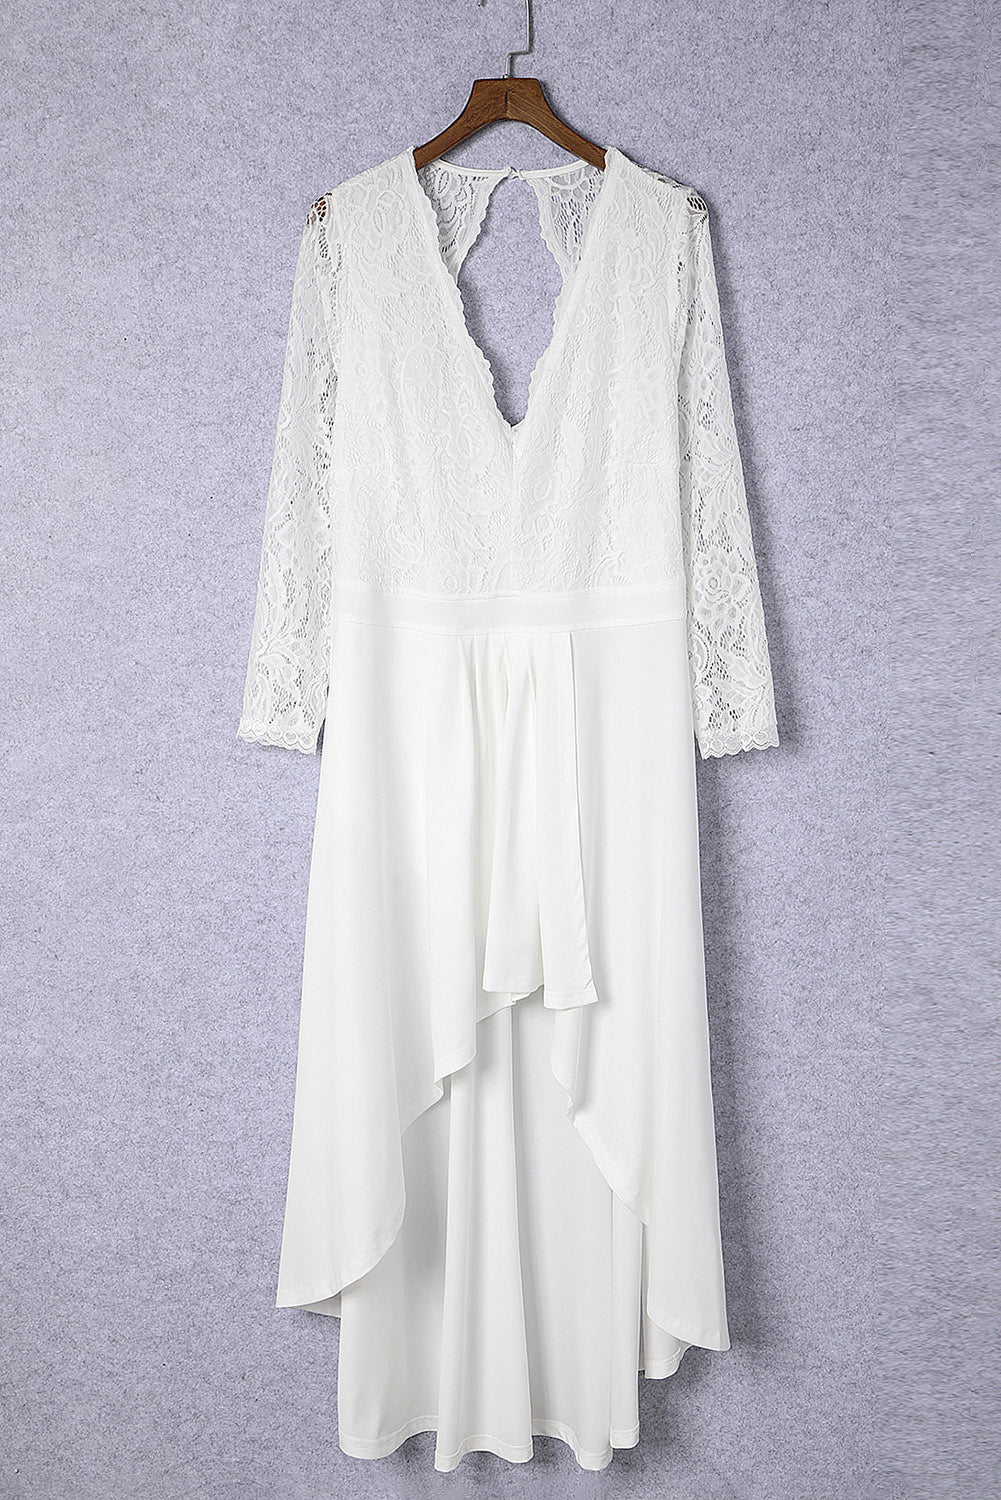 White Plus Size High-Low Lace Contrast Evening Dress Plus Size Dresses JT's Designer Fashion